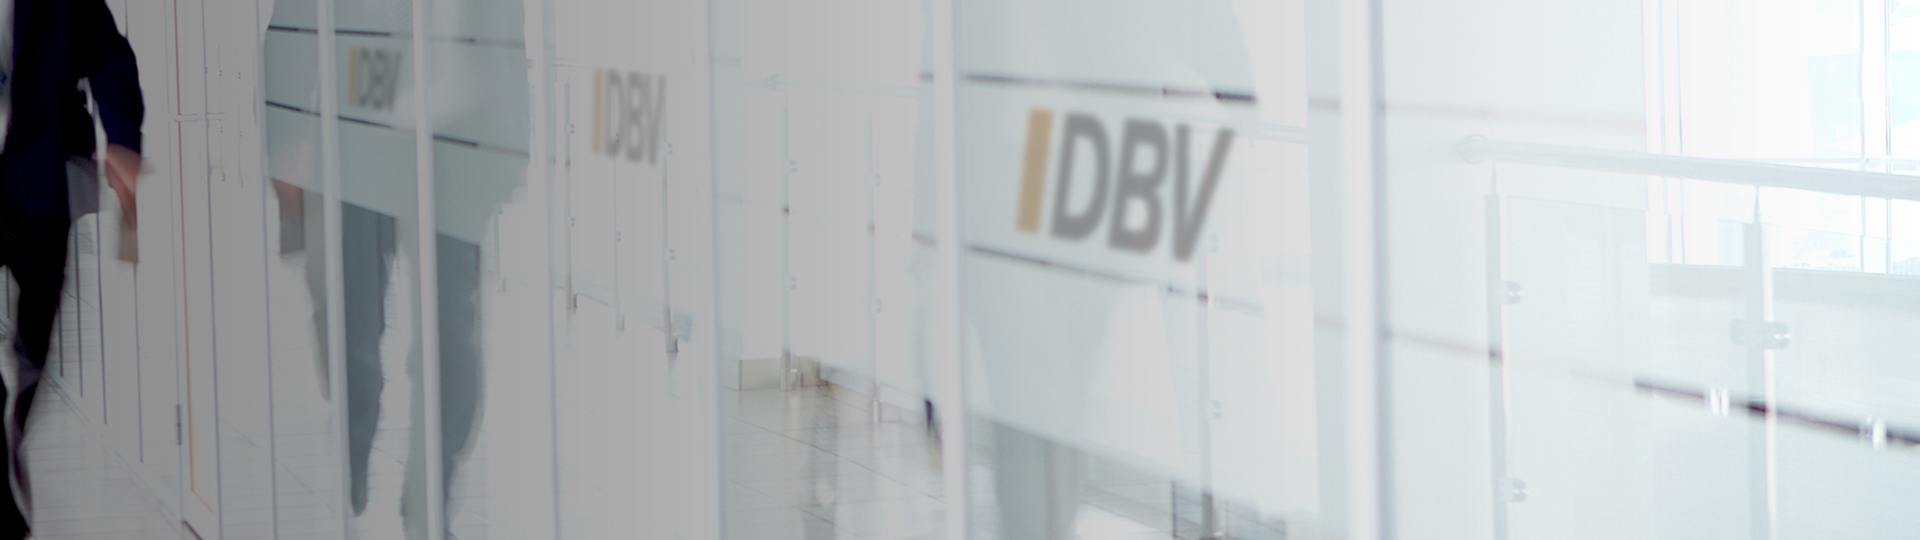 Dienstunfähigkeitsversicherung für Referendare | DBV Hannover Hornig & Knoch oHG 